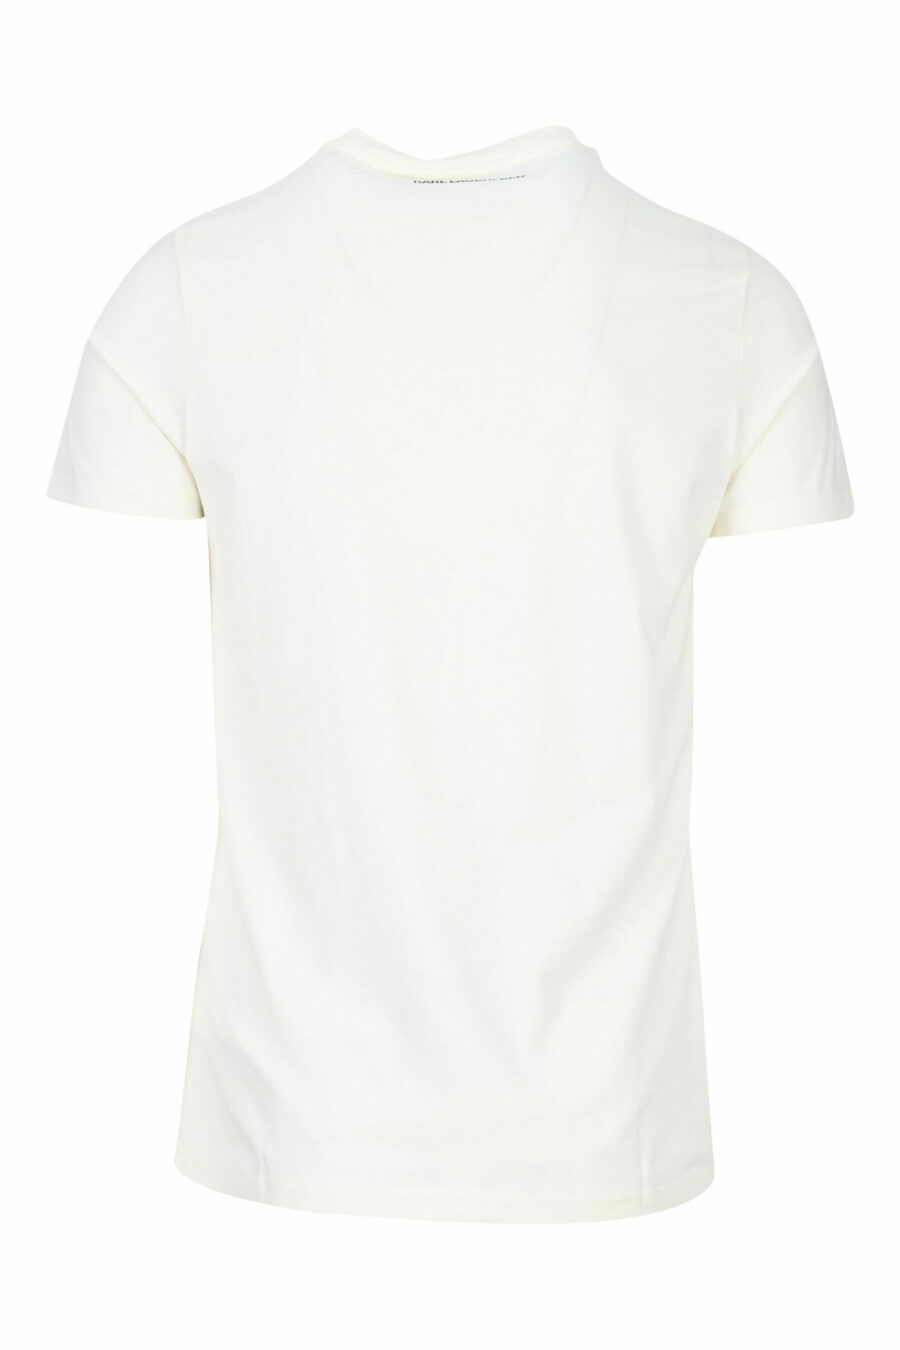 Beigefarbenes T-Shirt mit Maxilogo "karl" - 4062226681735 1 skaliert